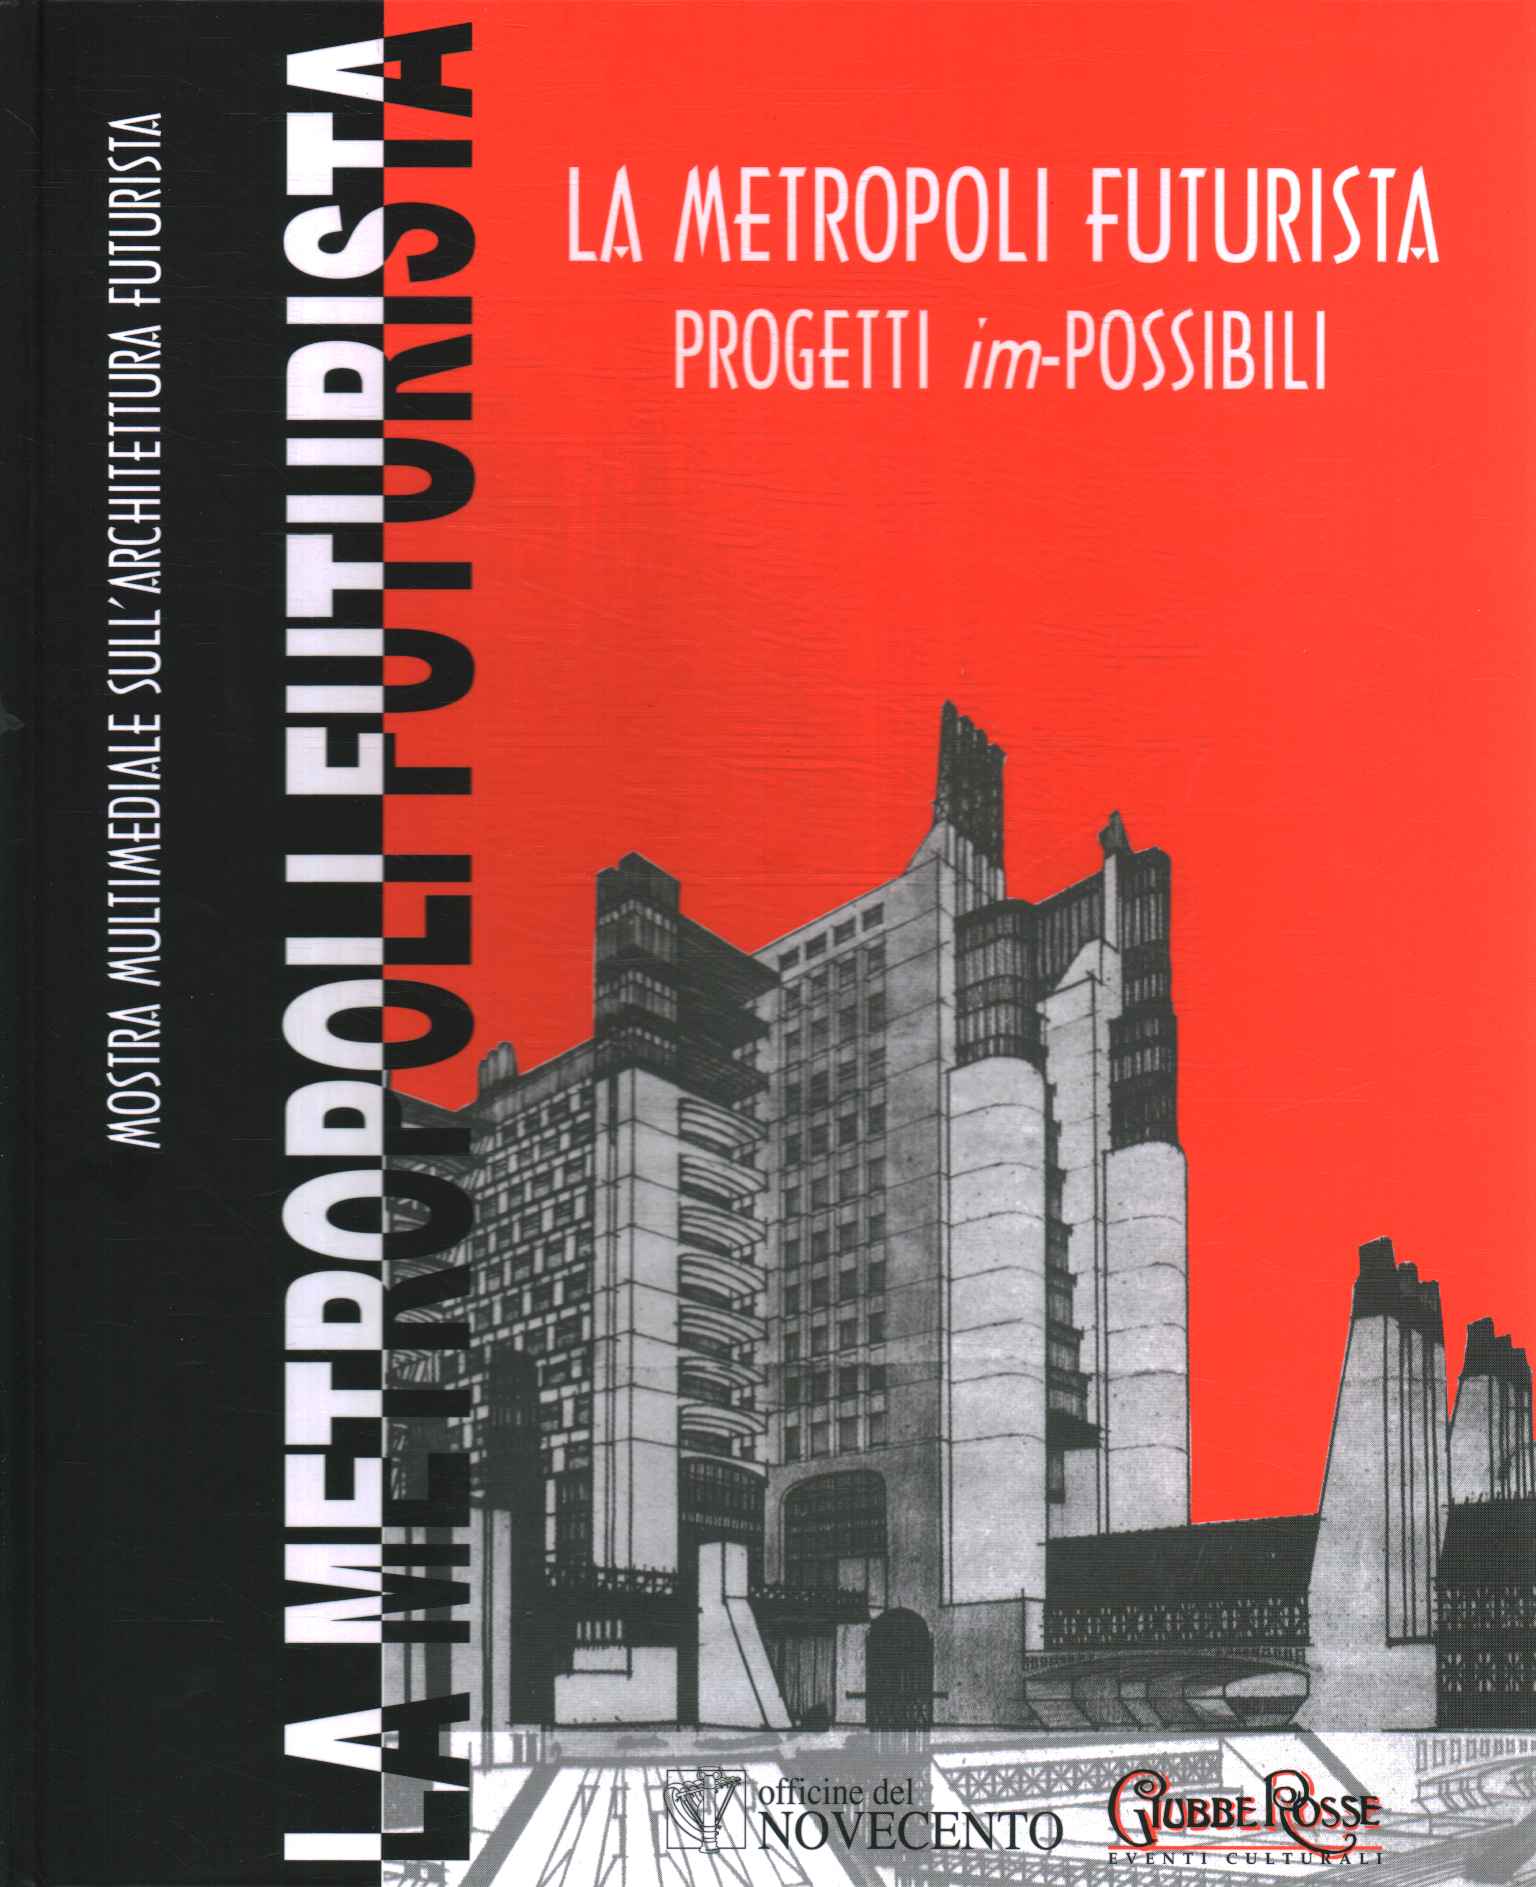 La Metropoli futurista. Progetti im-possib